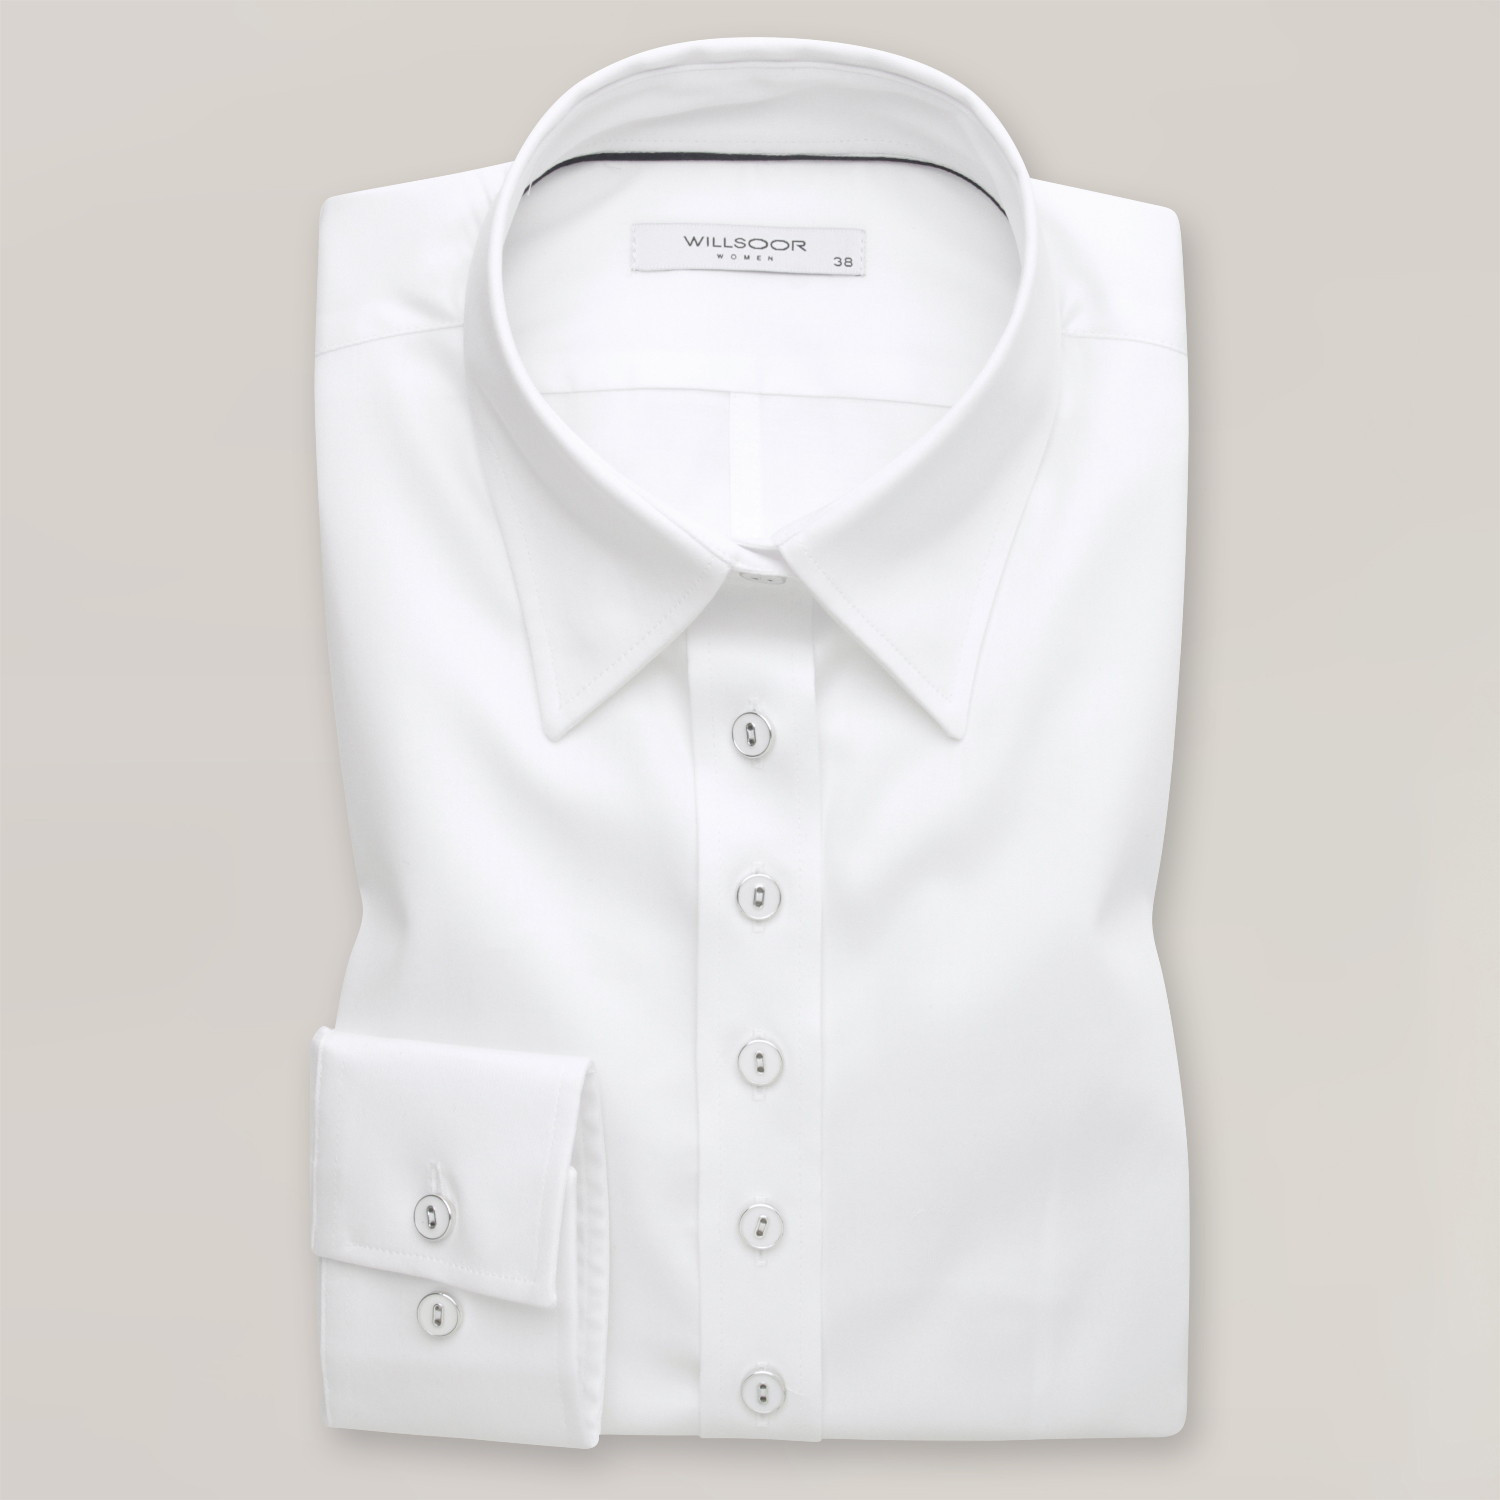 Biała bluzka ze stylowymi guzikami